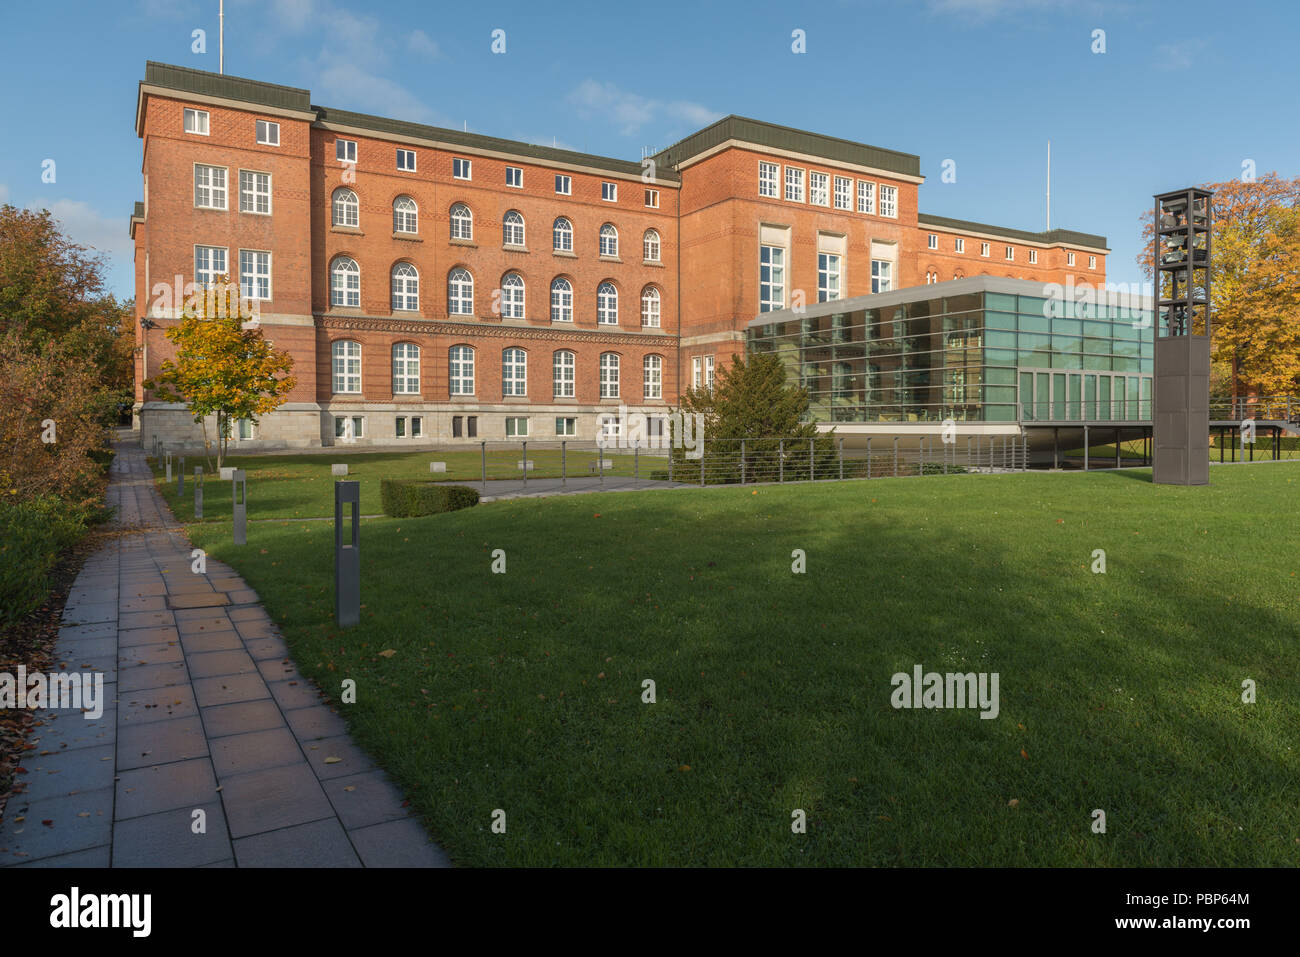 Regierung Gebäude, das Parlamentsgebäude, Glaskonstruktion, Kieler Förde, Kiel, die Hauptstadt von Schleswig-Holstein, Deutschland, Europa Stockfoto